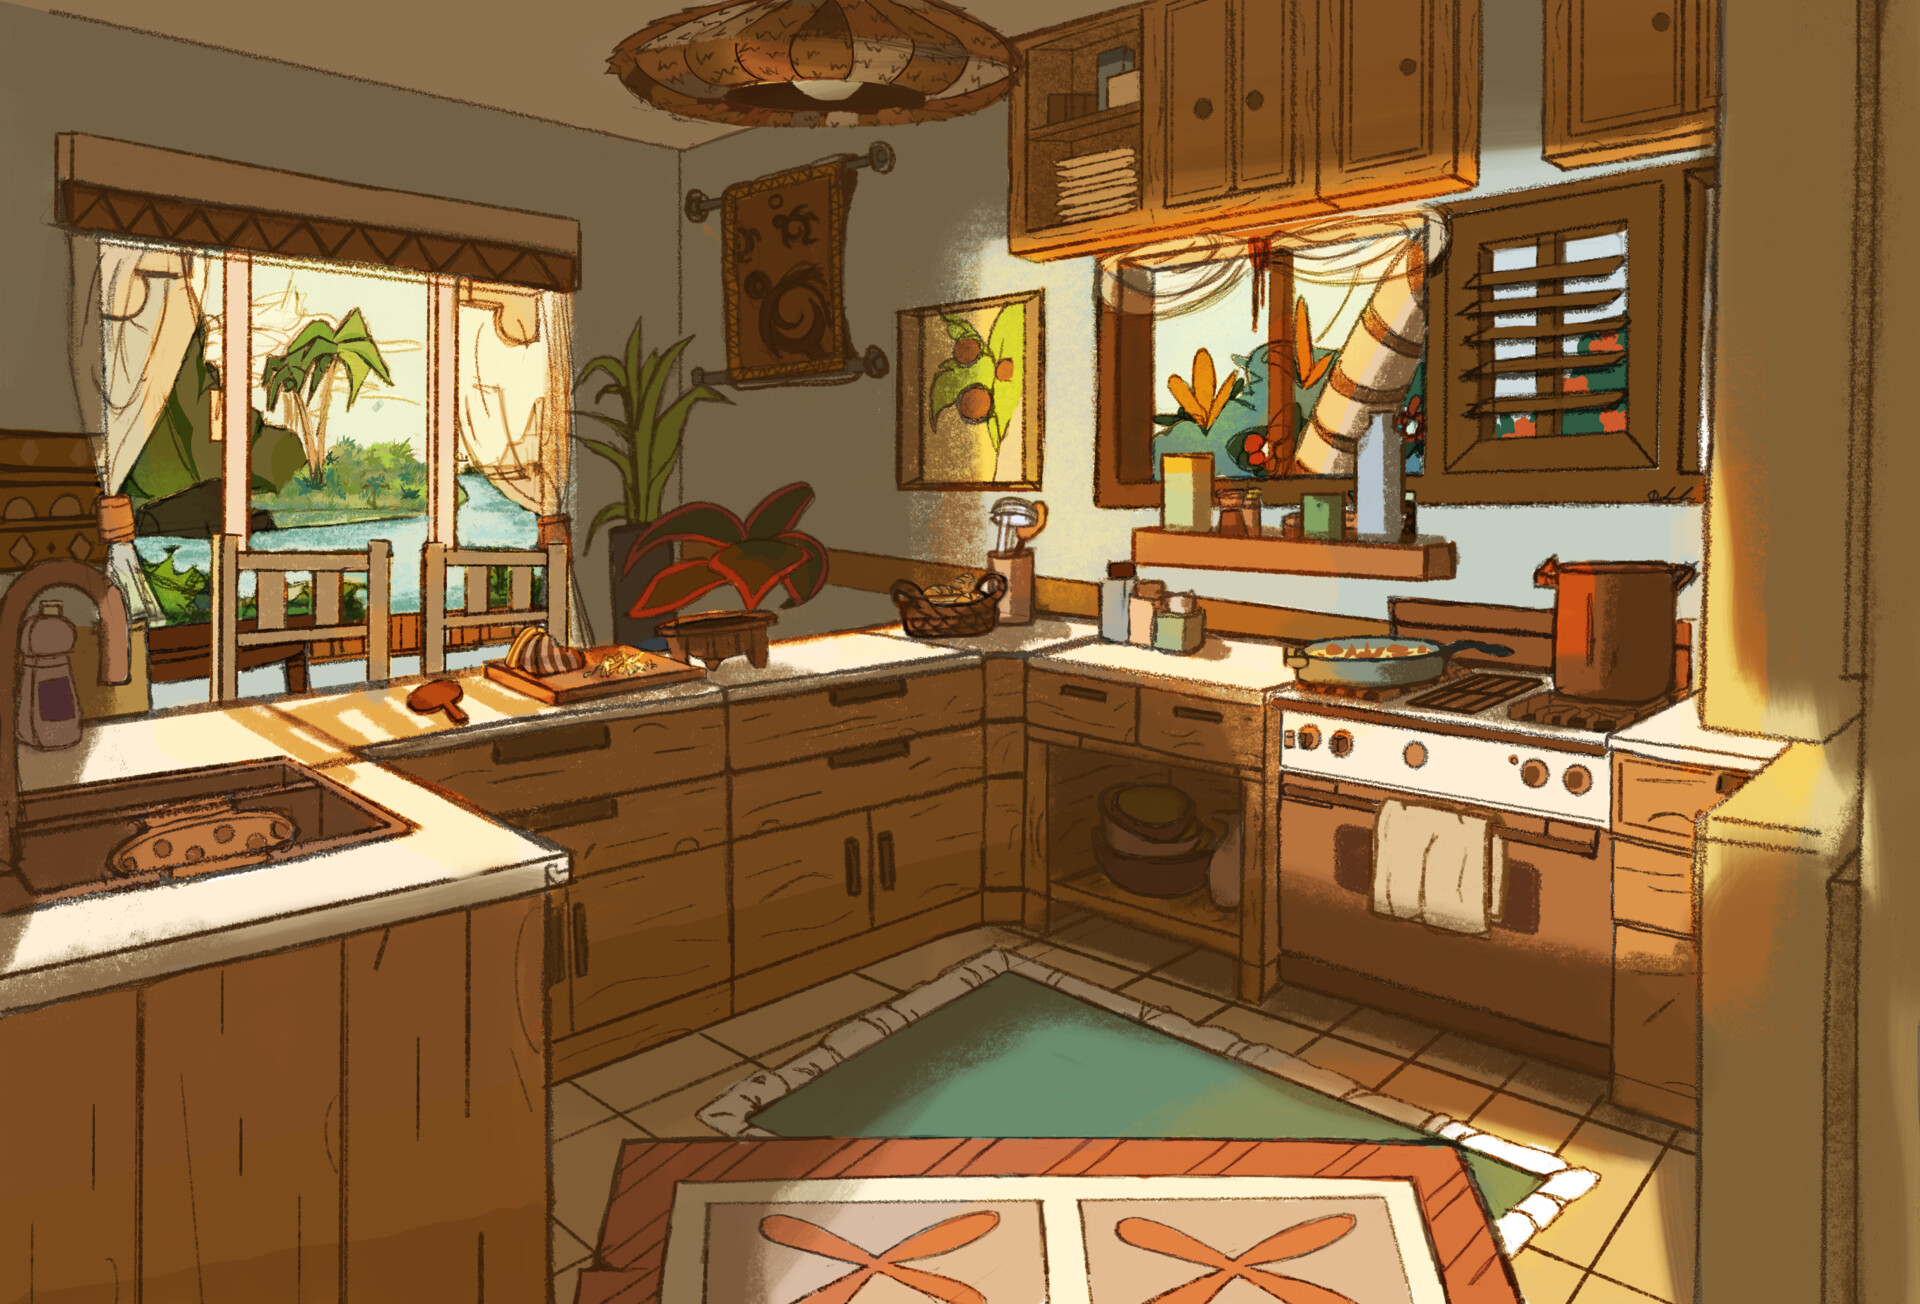 ArtStation - Island Kitchen Background